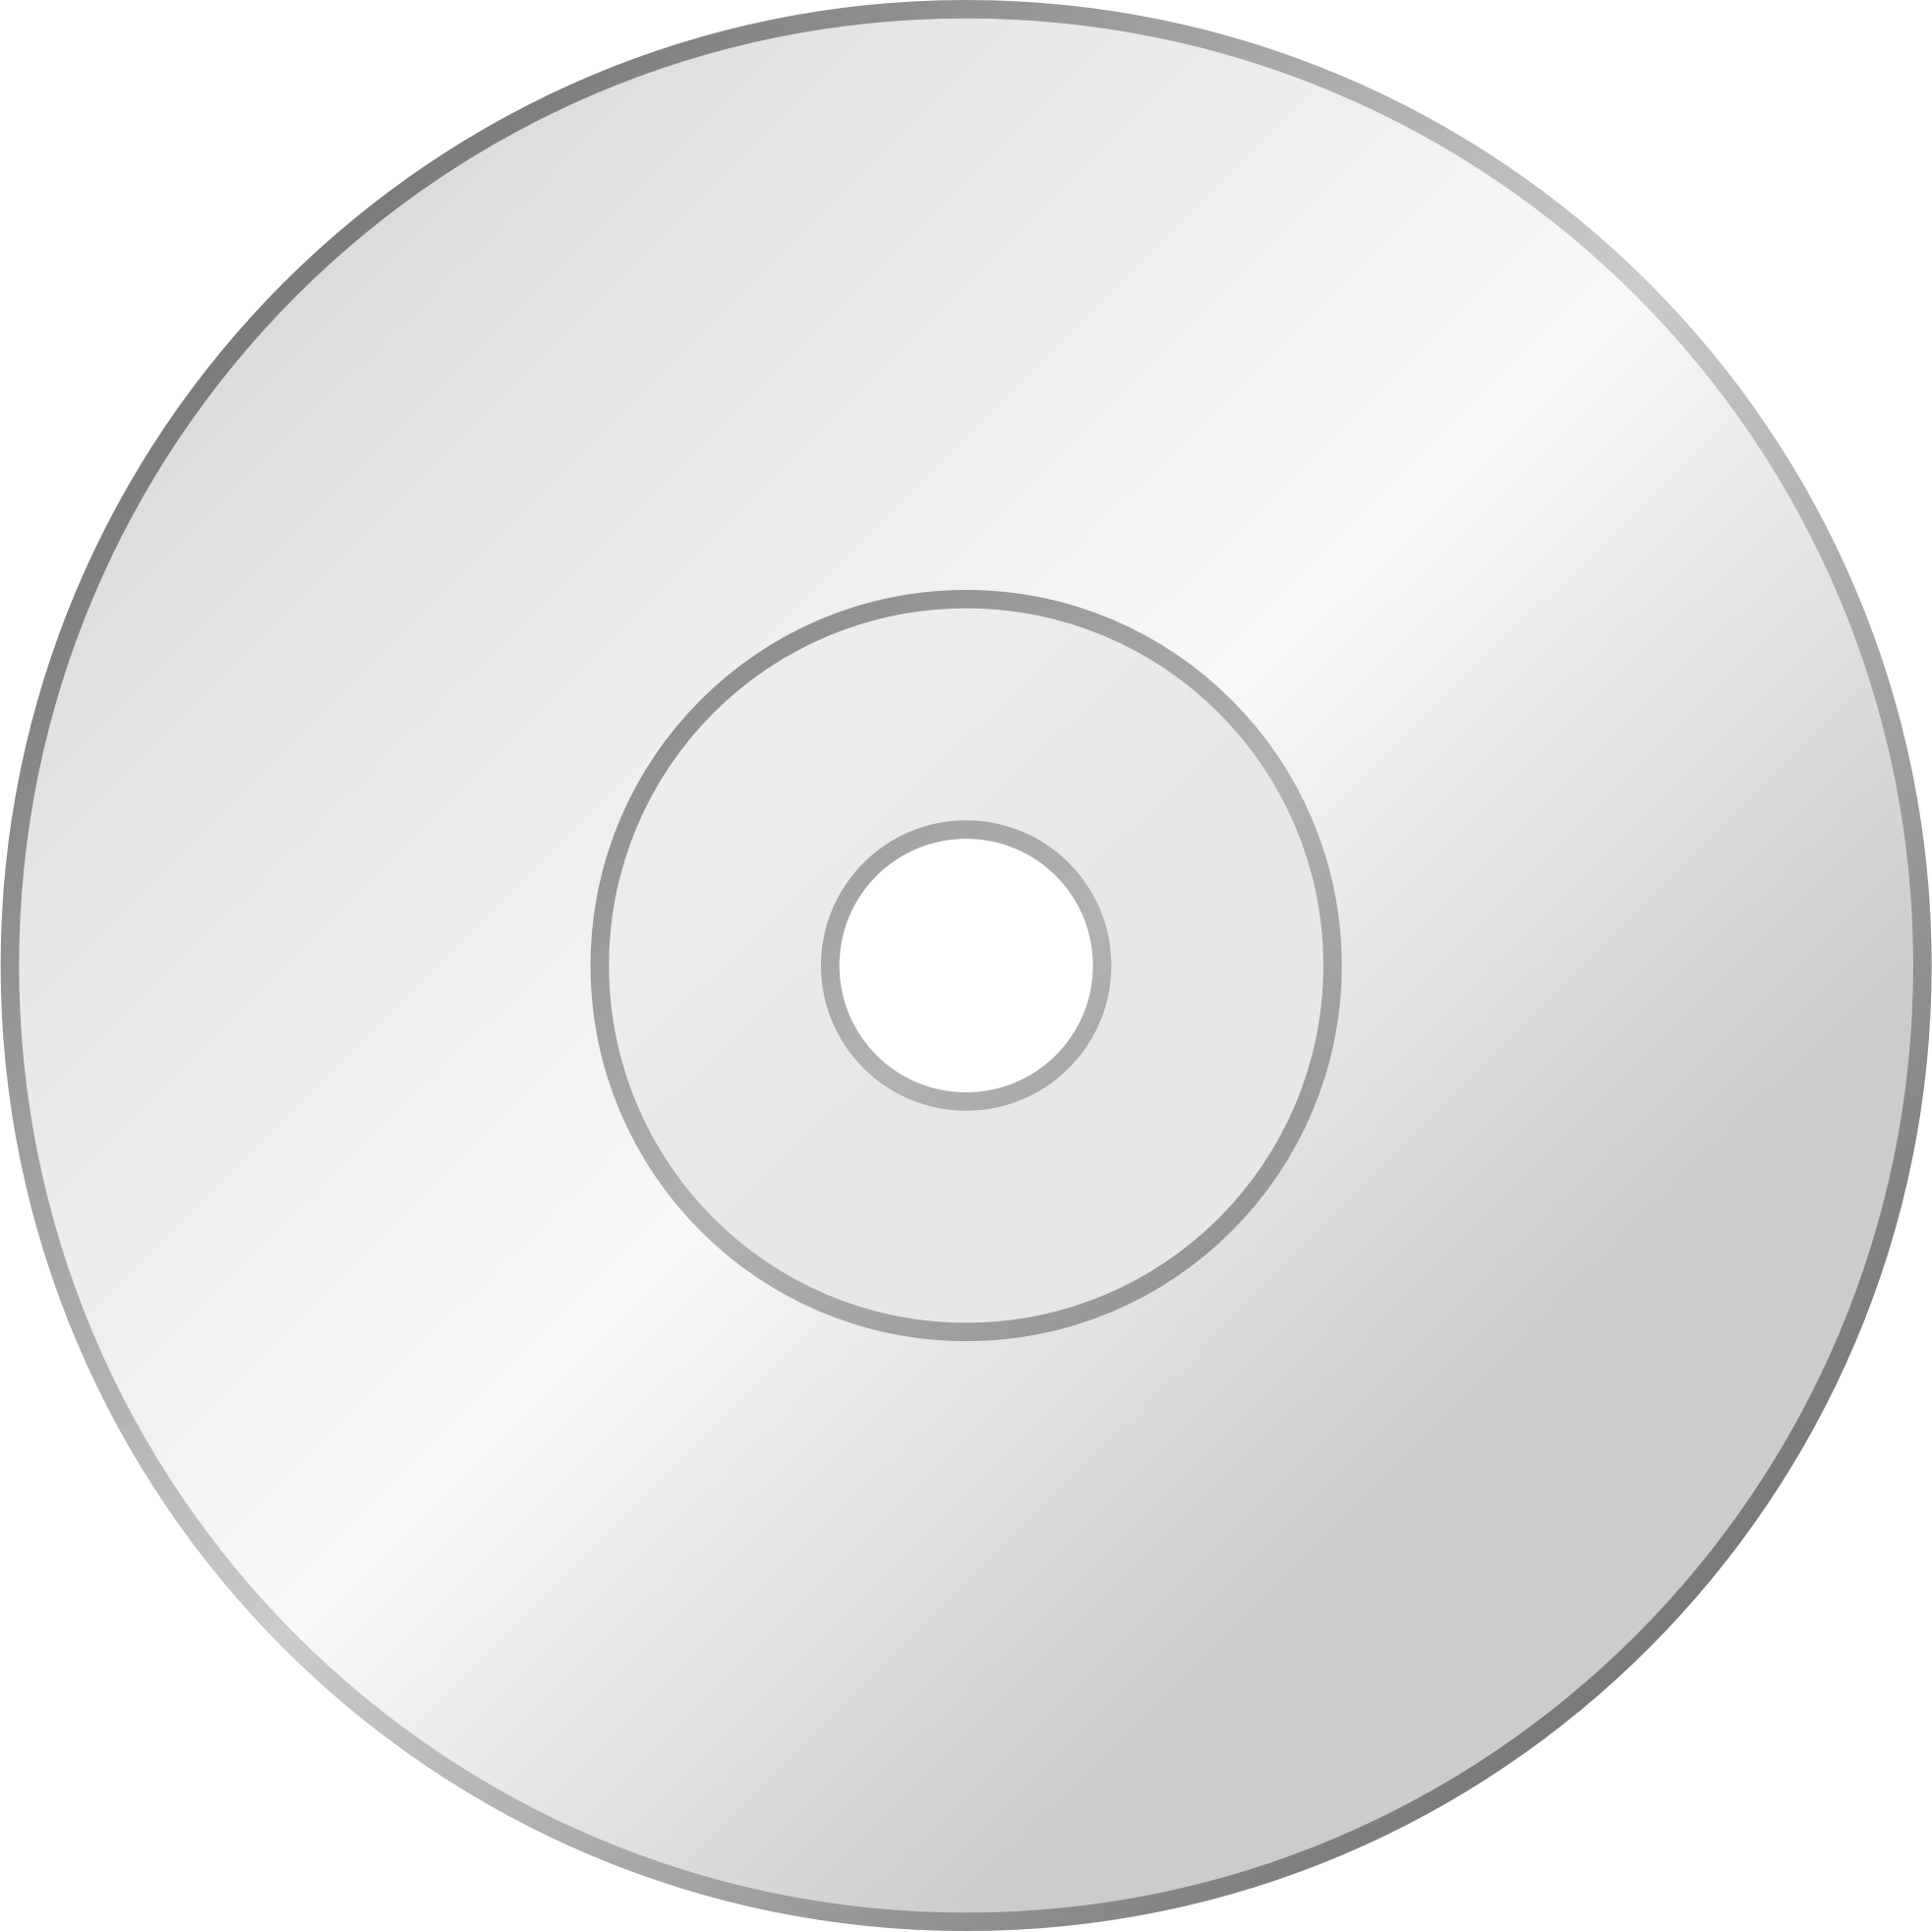 Компактный диск PNG фоновое изображение